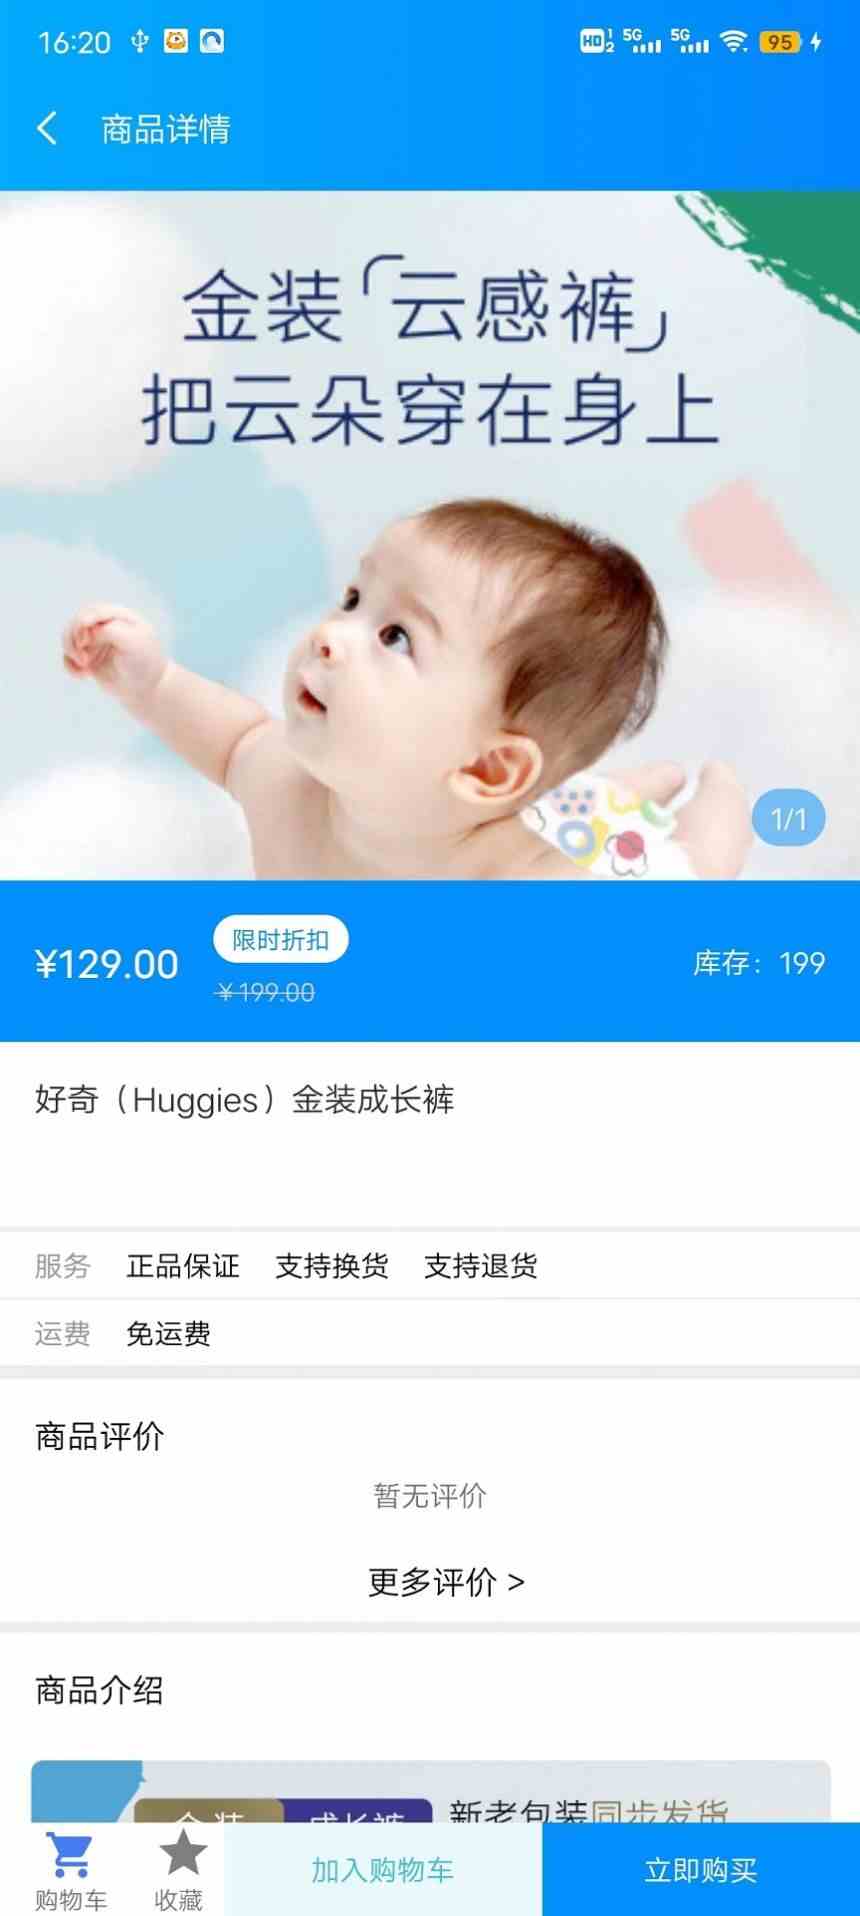 粤儿保母婴商城软件